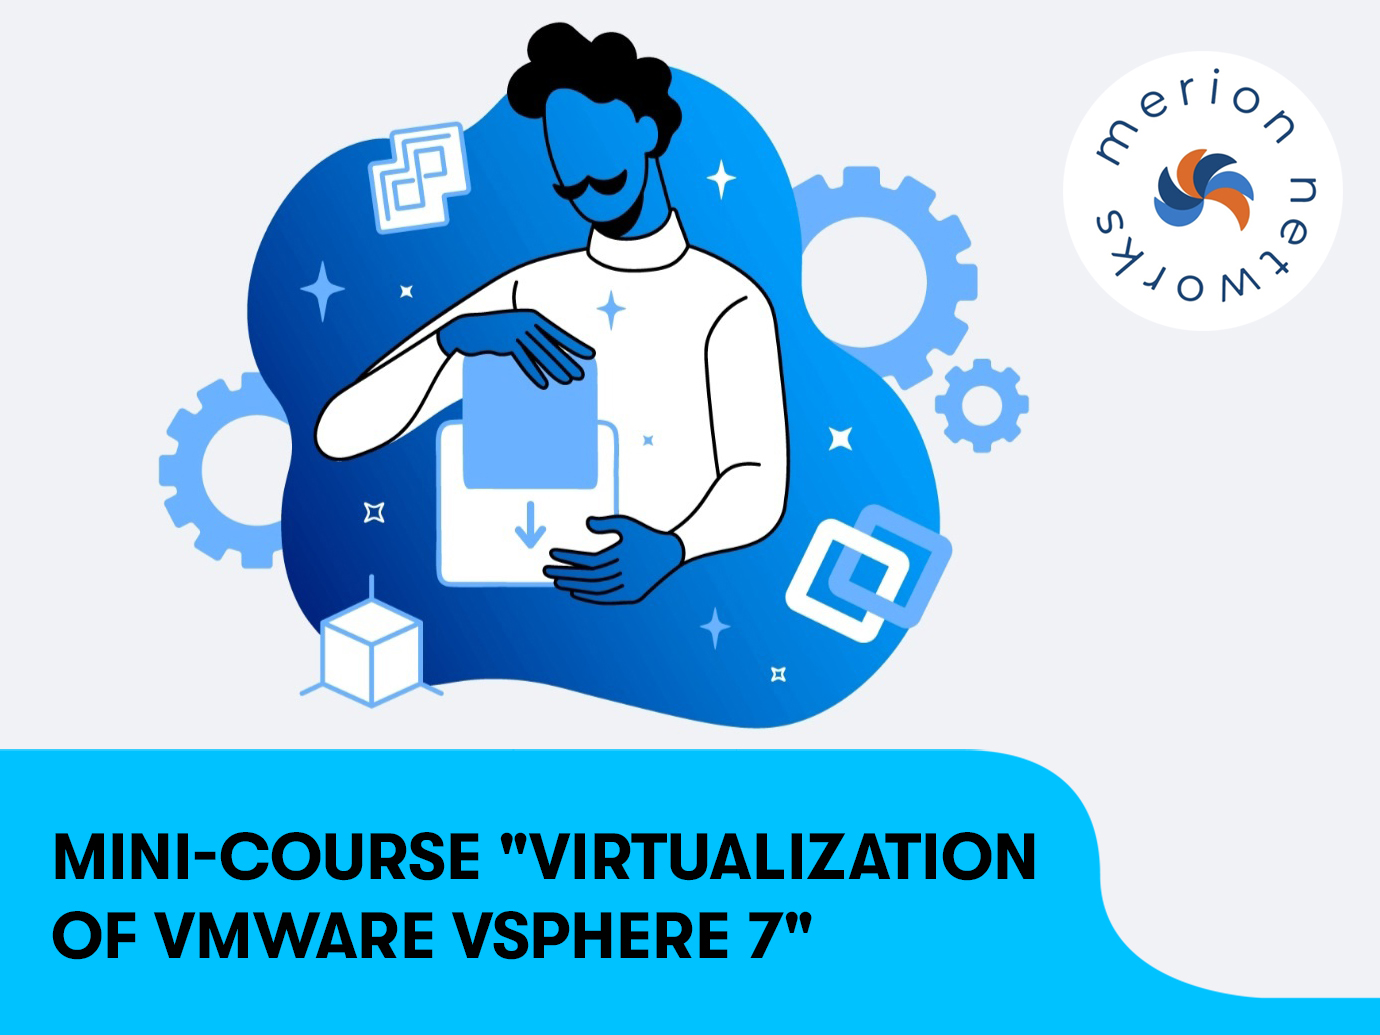 Mini-course “Virtualization of VMware vSphere 7“